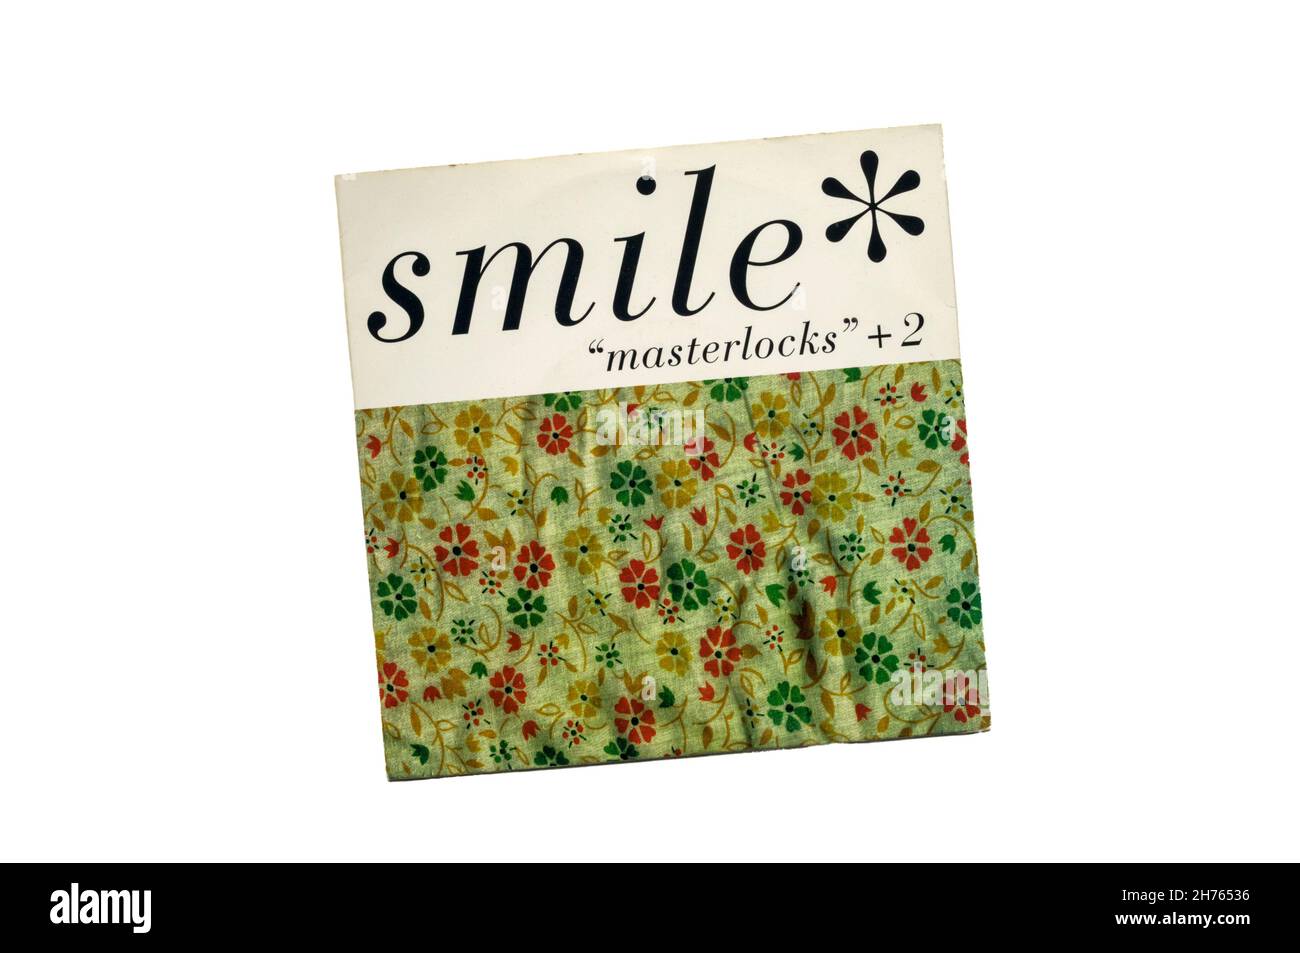 1996 7' single, 'Masterlocks' +2 della band americana alternative rock Smile. Foto Stock